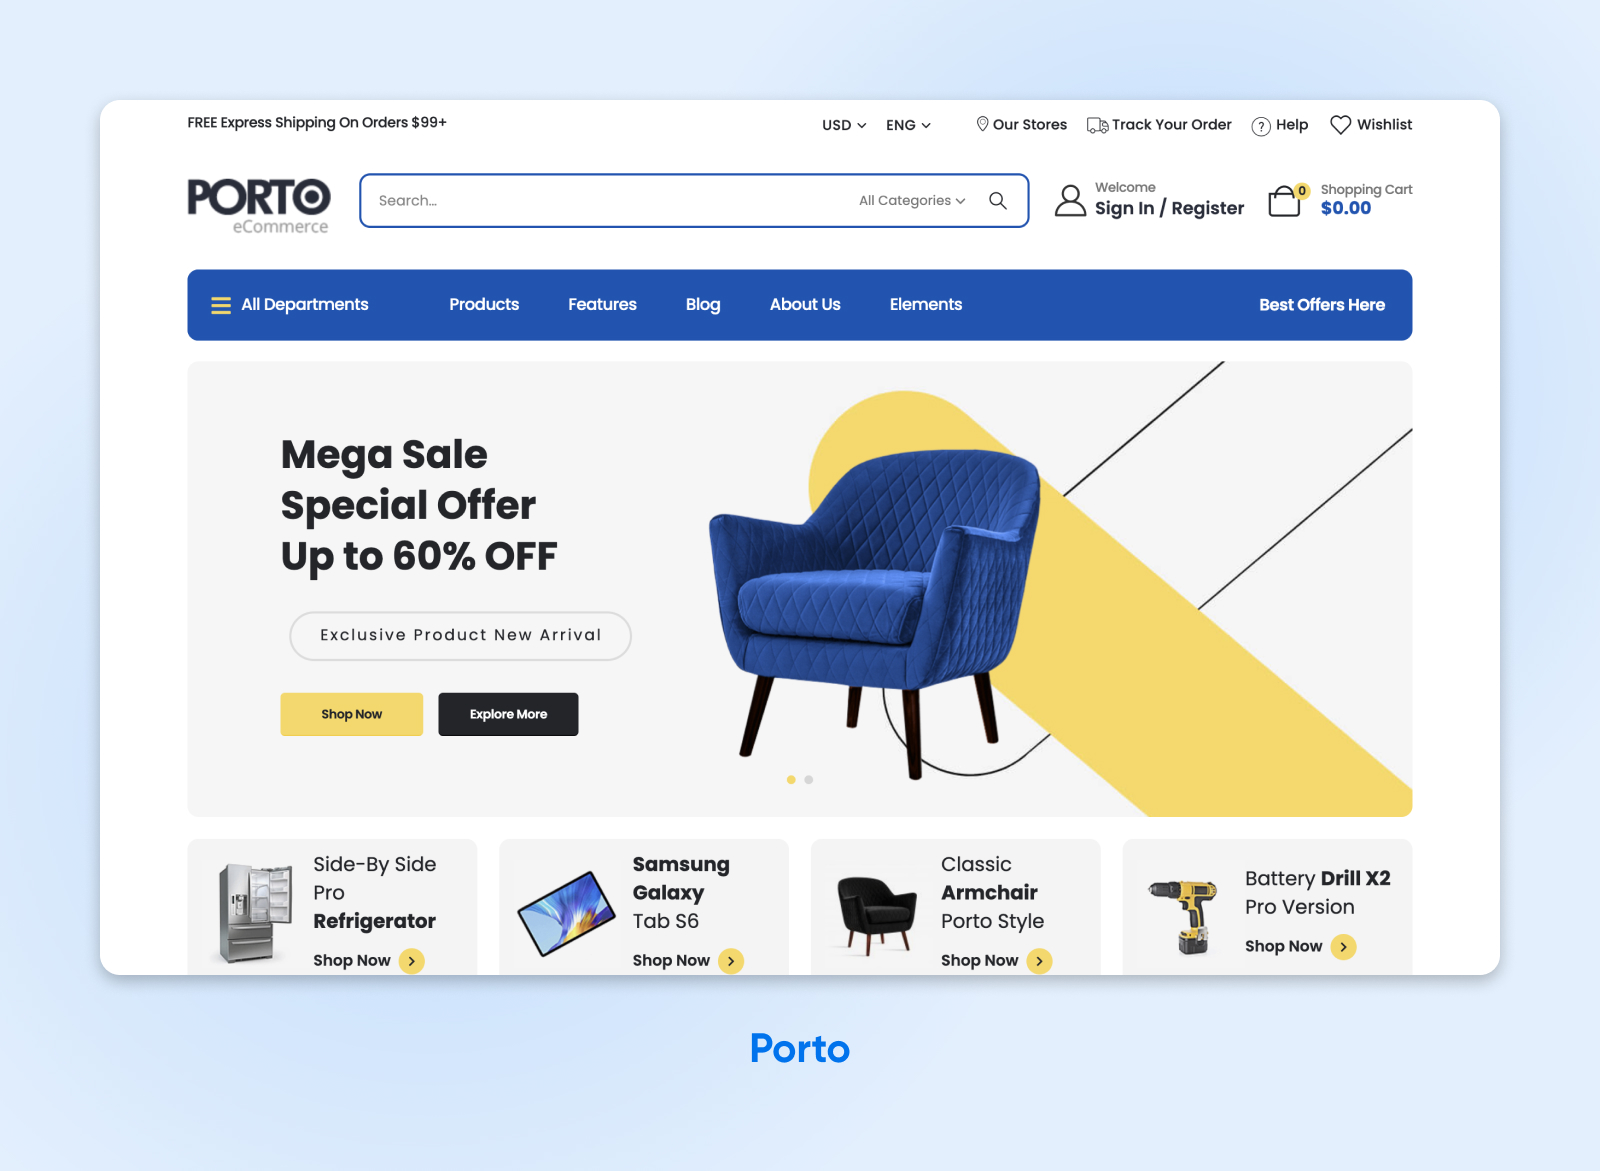 Ejemplo de página web de Oporto con temática azul y amarilla, con opciones para comprar muebles, aparatos, taladros, etc.